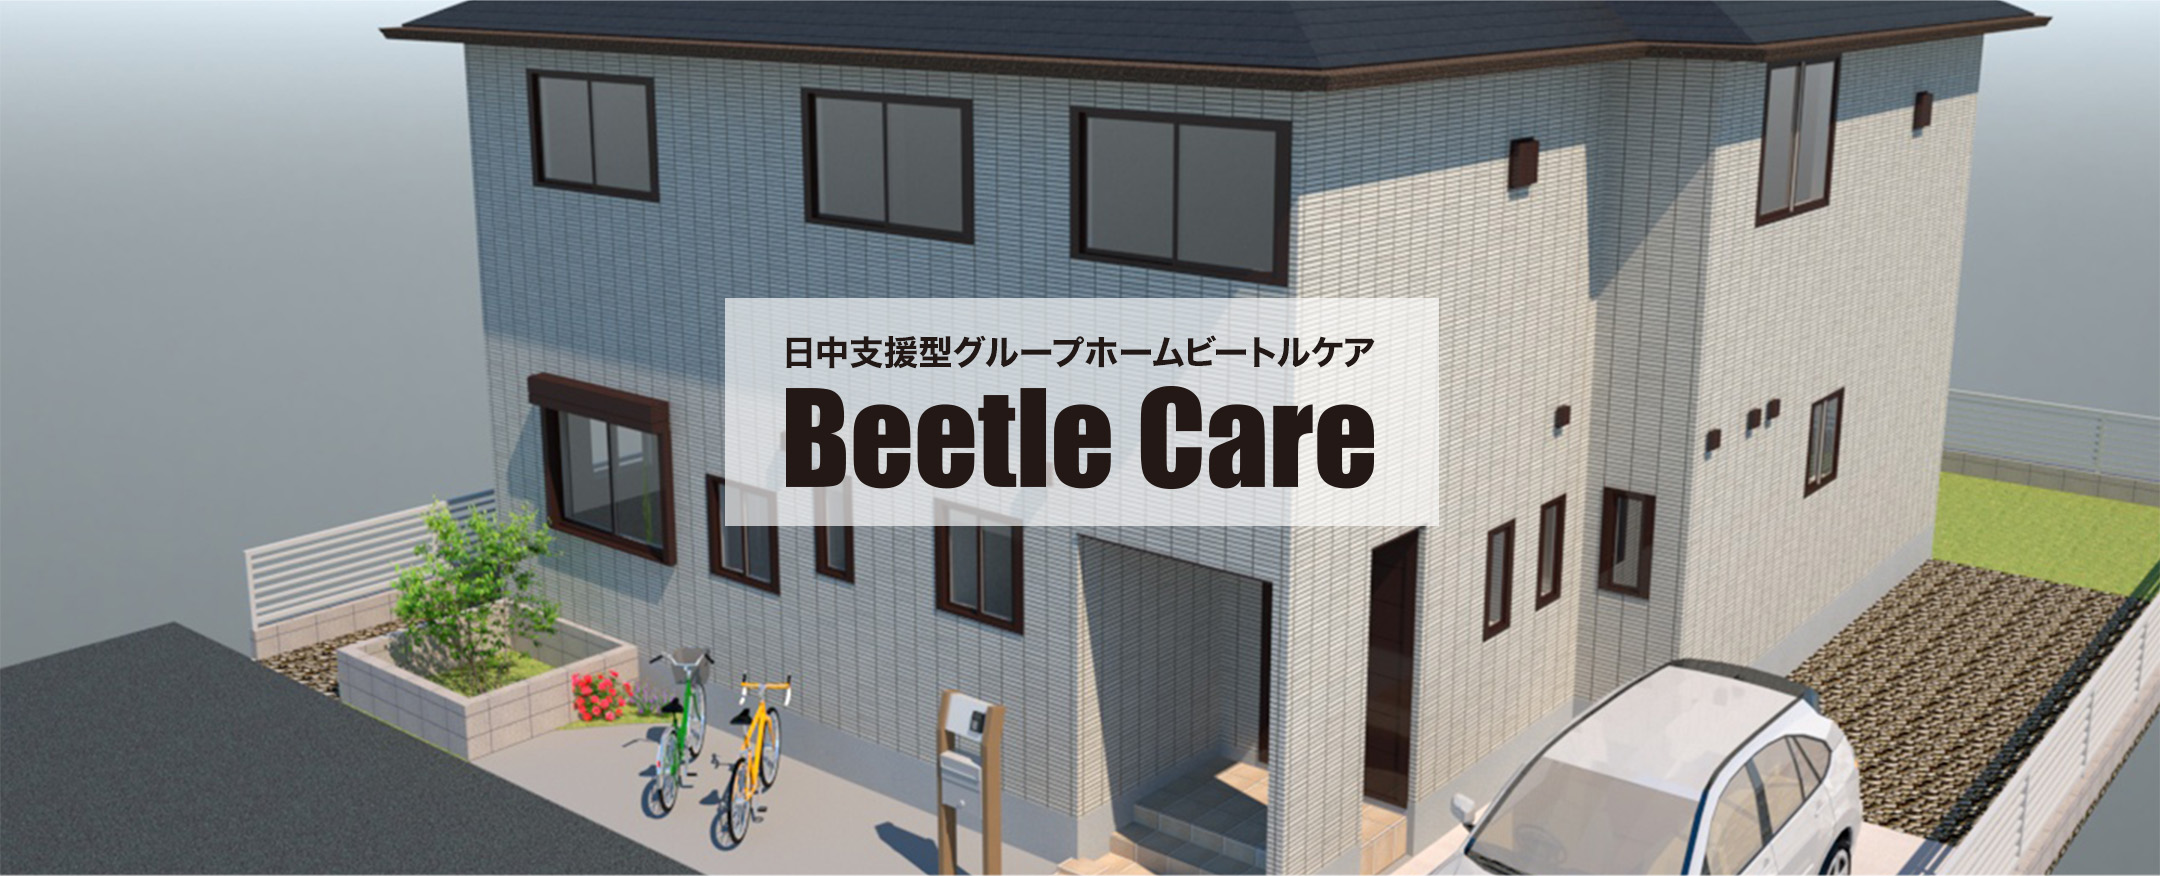 日中支援型グループホームBeetle Care